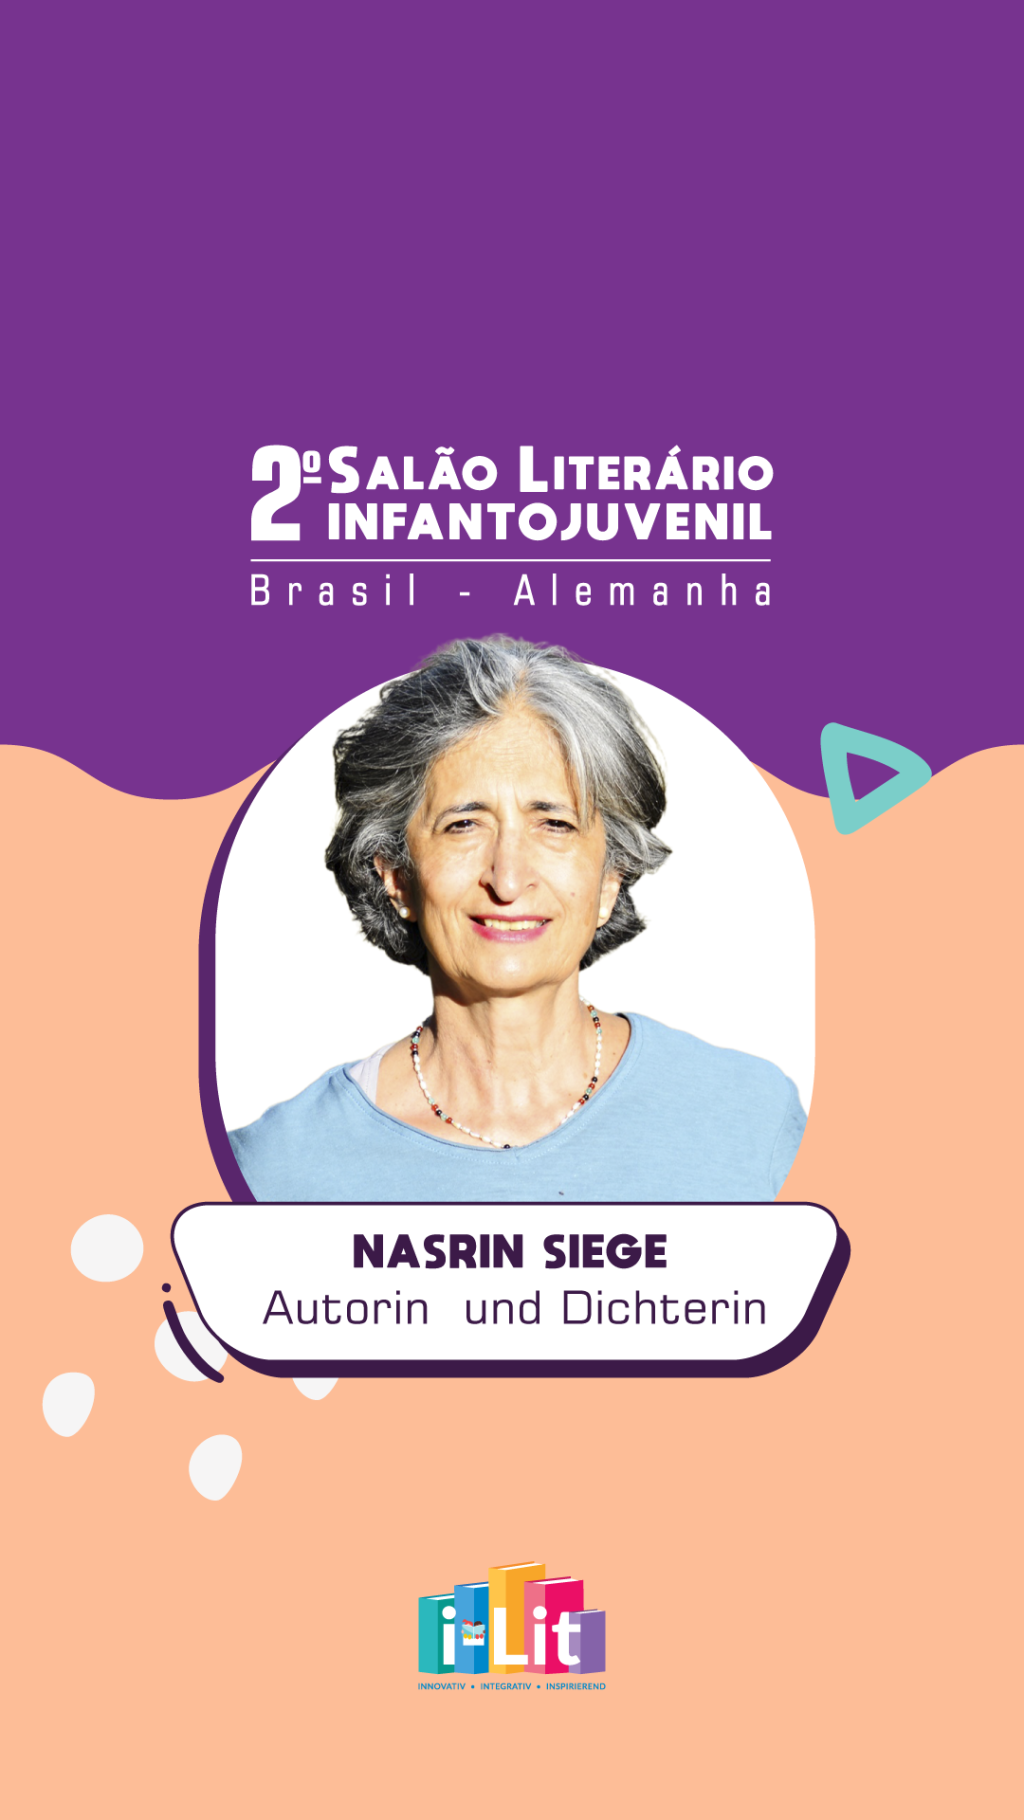 Confira o convite de Nasrin Siege, que estará presente no 2° Salão Literário Infantojuvenil Brasil – Alemanha!